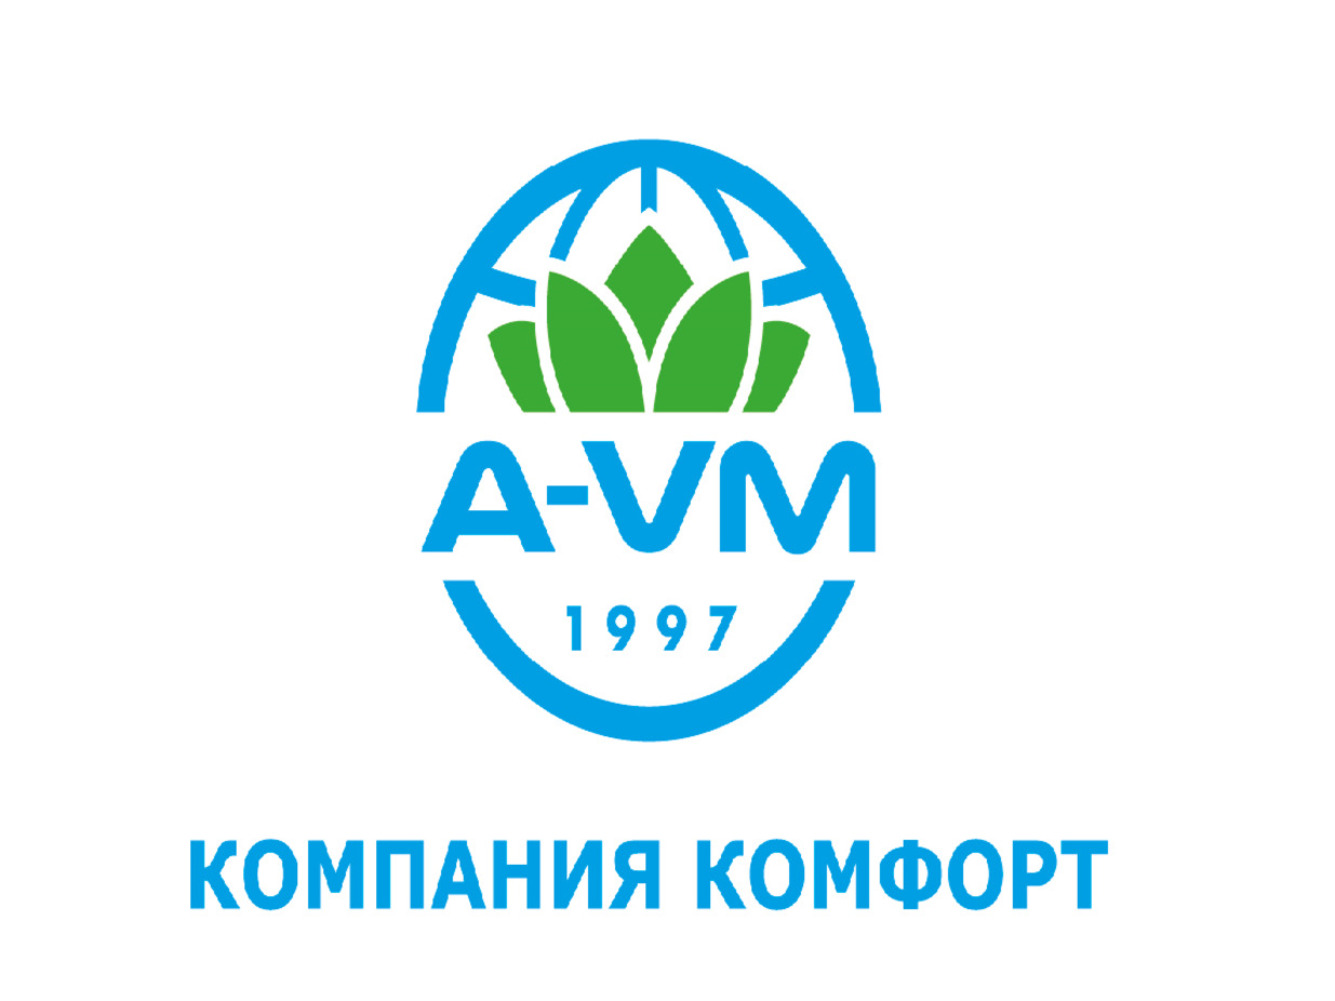 A-VM